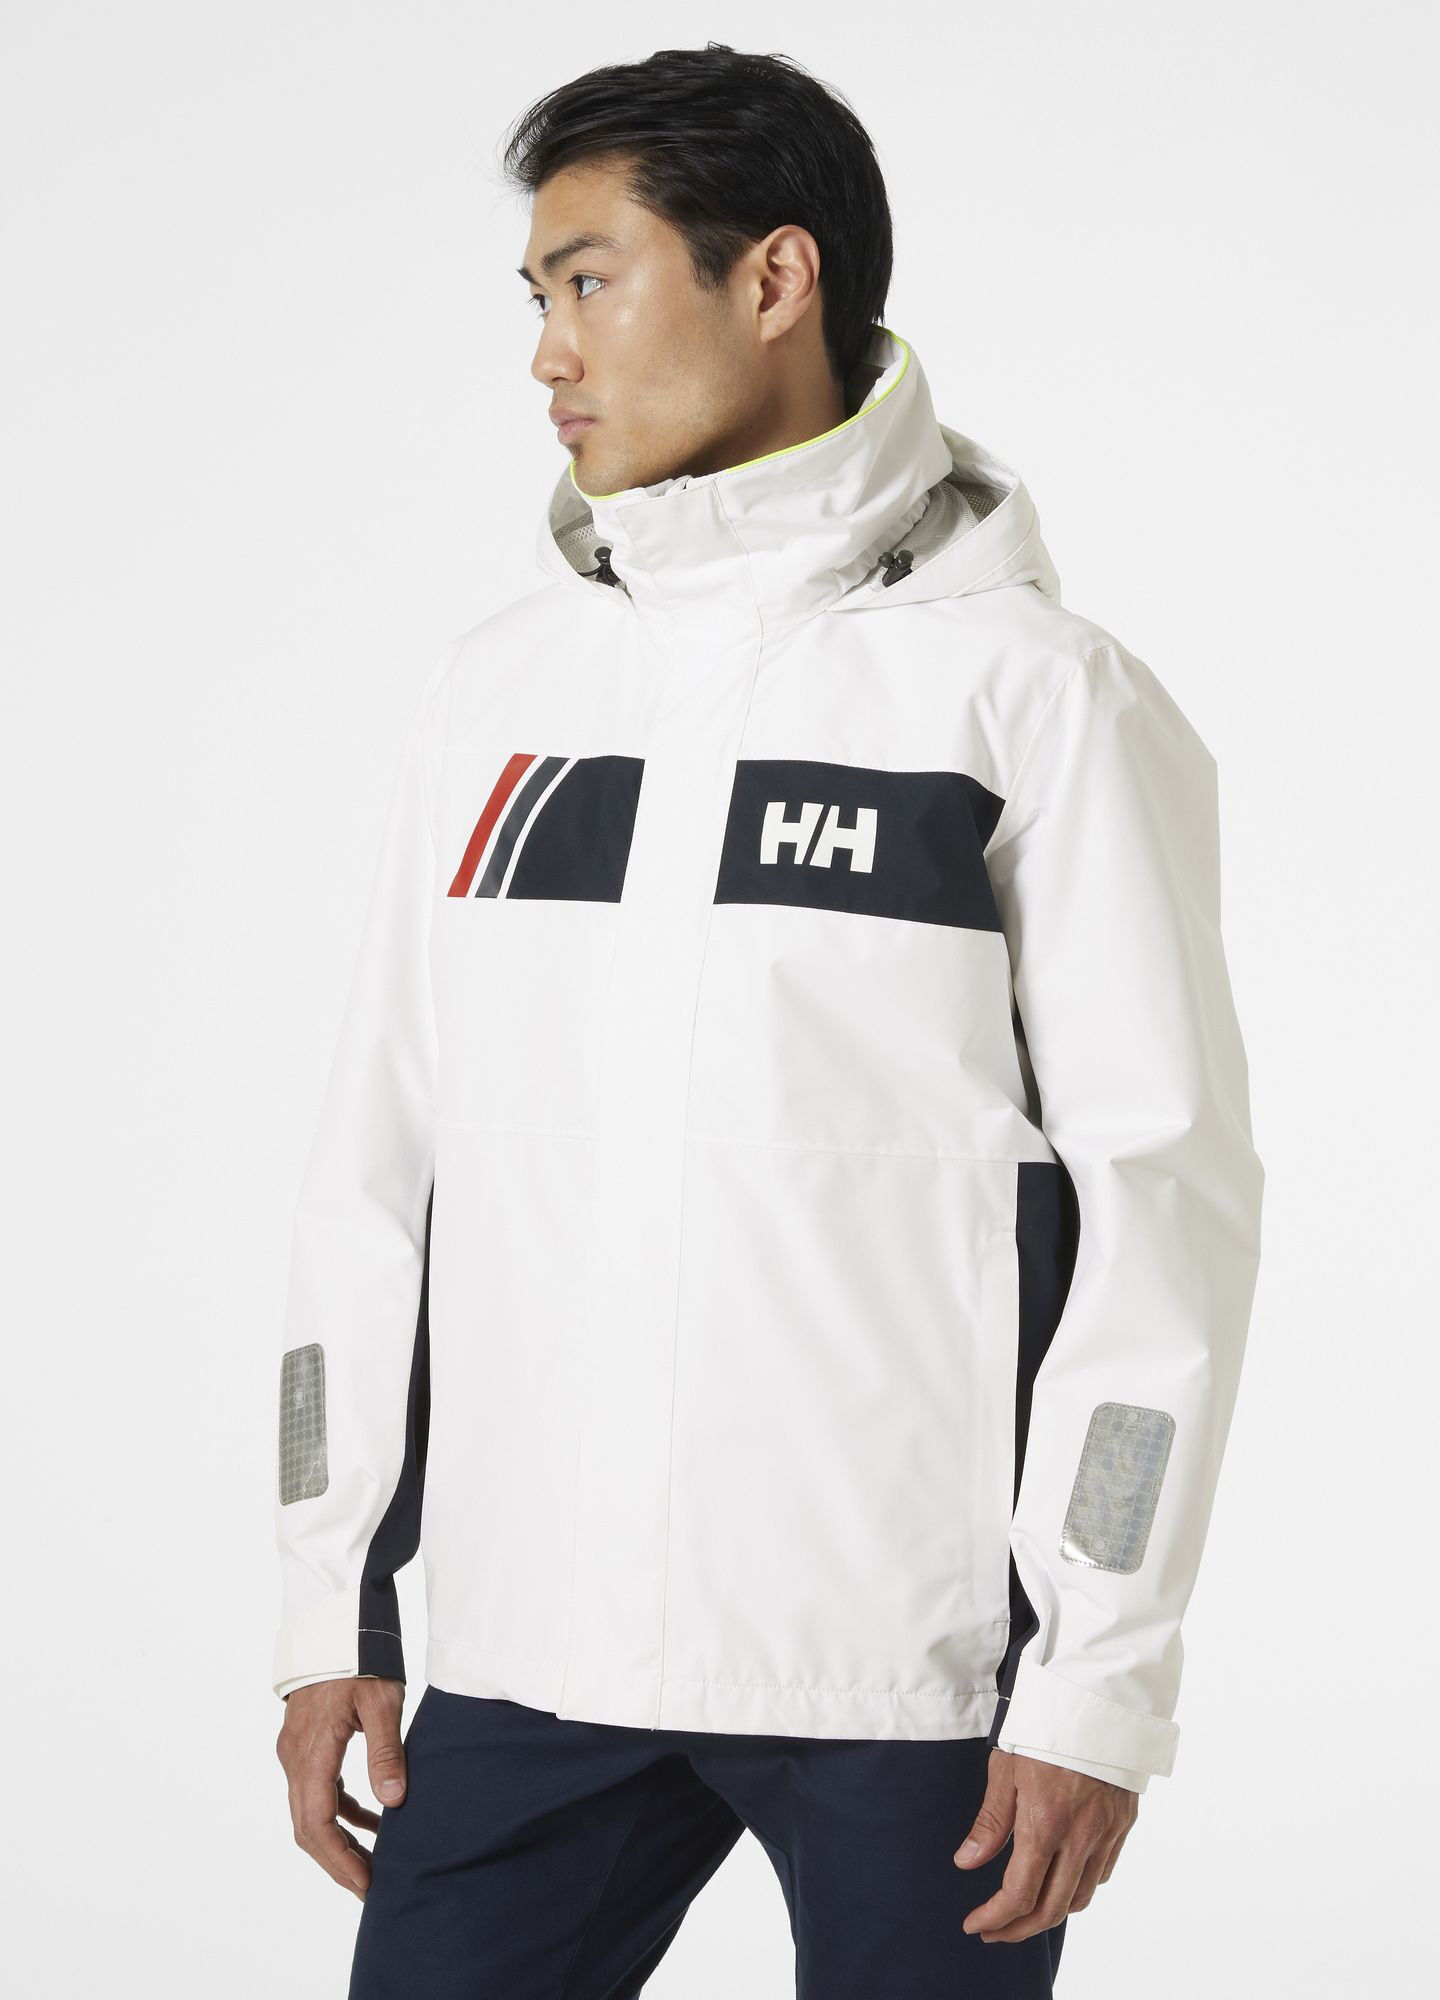 Helly Hansen Newport Inshore Jacket - Seglarjacka - Herr | Hardloop